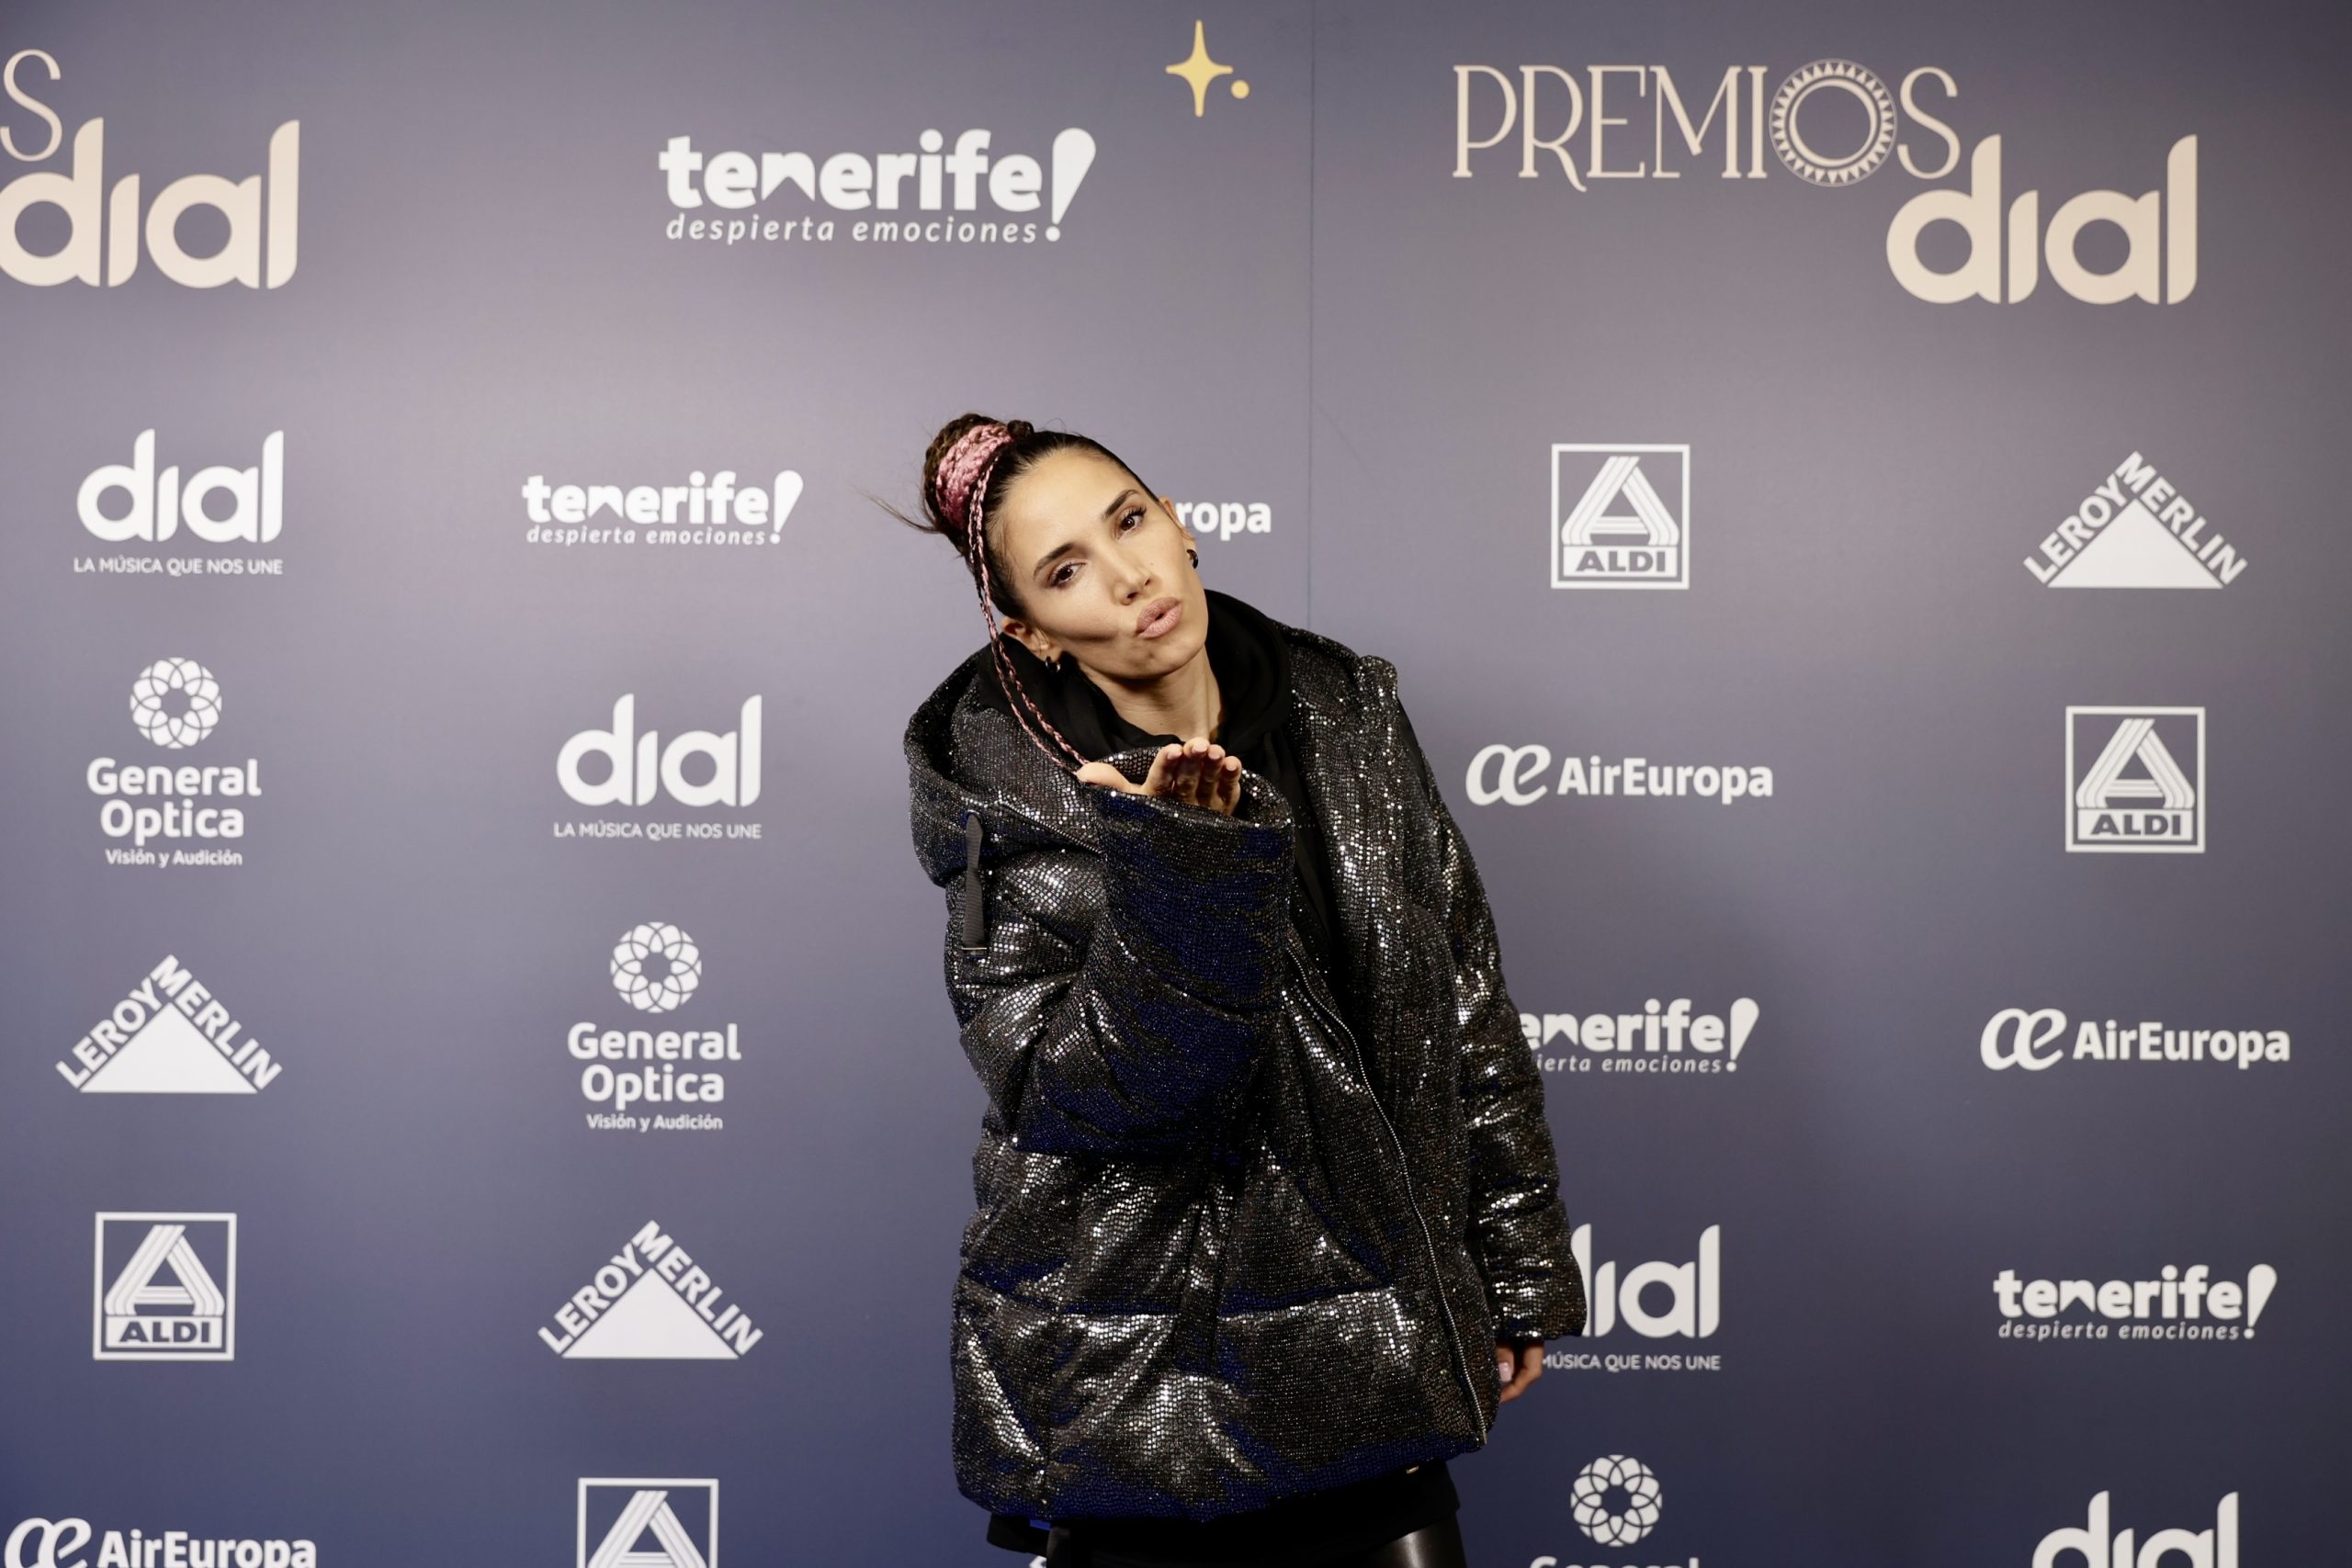 India Martínez en la rueda de prensa de Premios Dial Tenerife